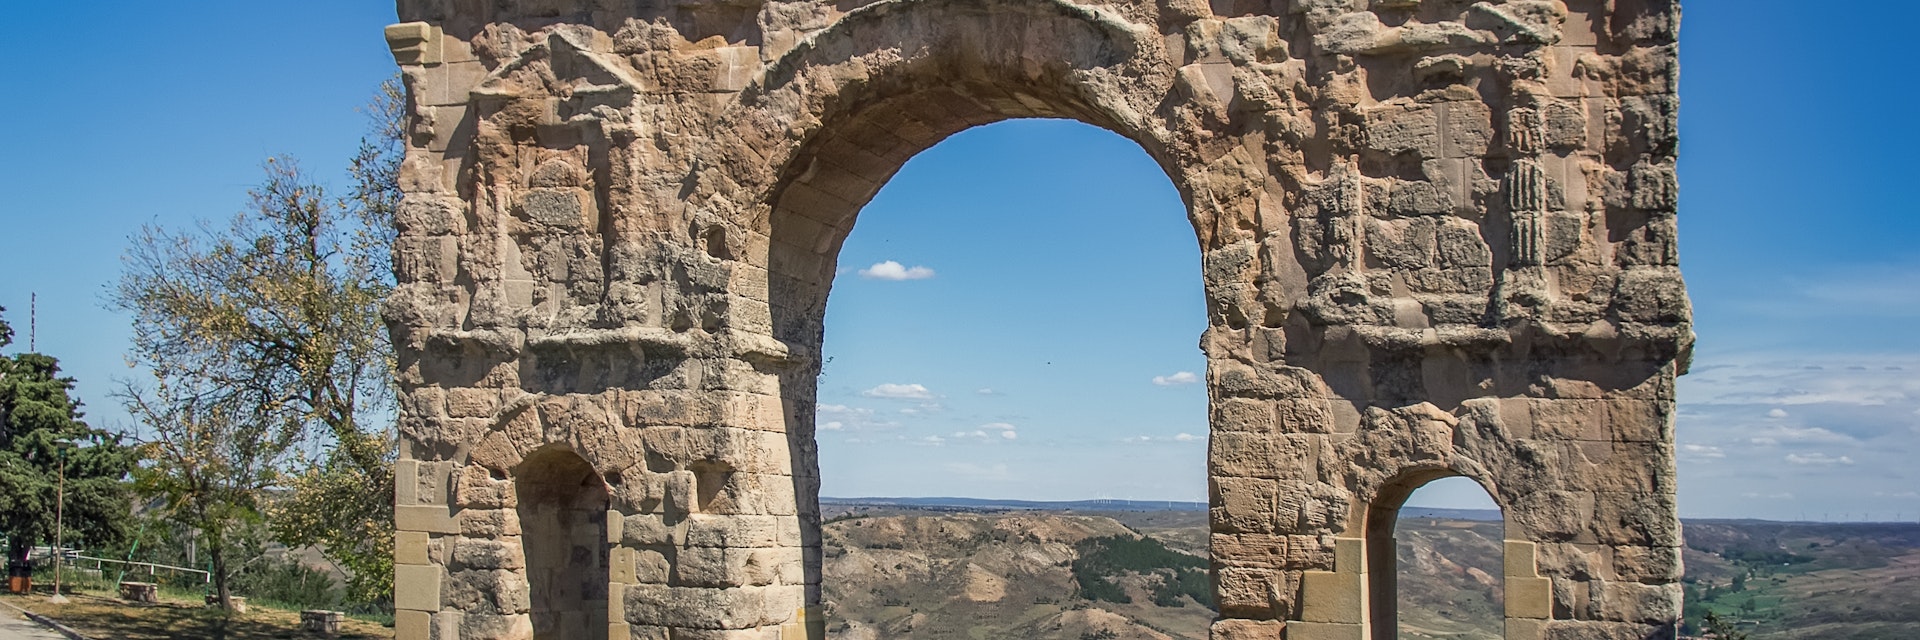 The Roman arch of Medinaceli.